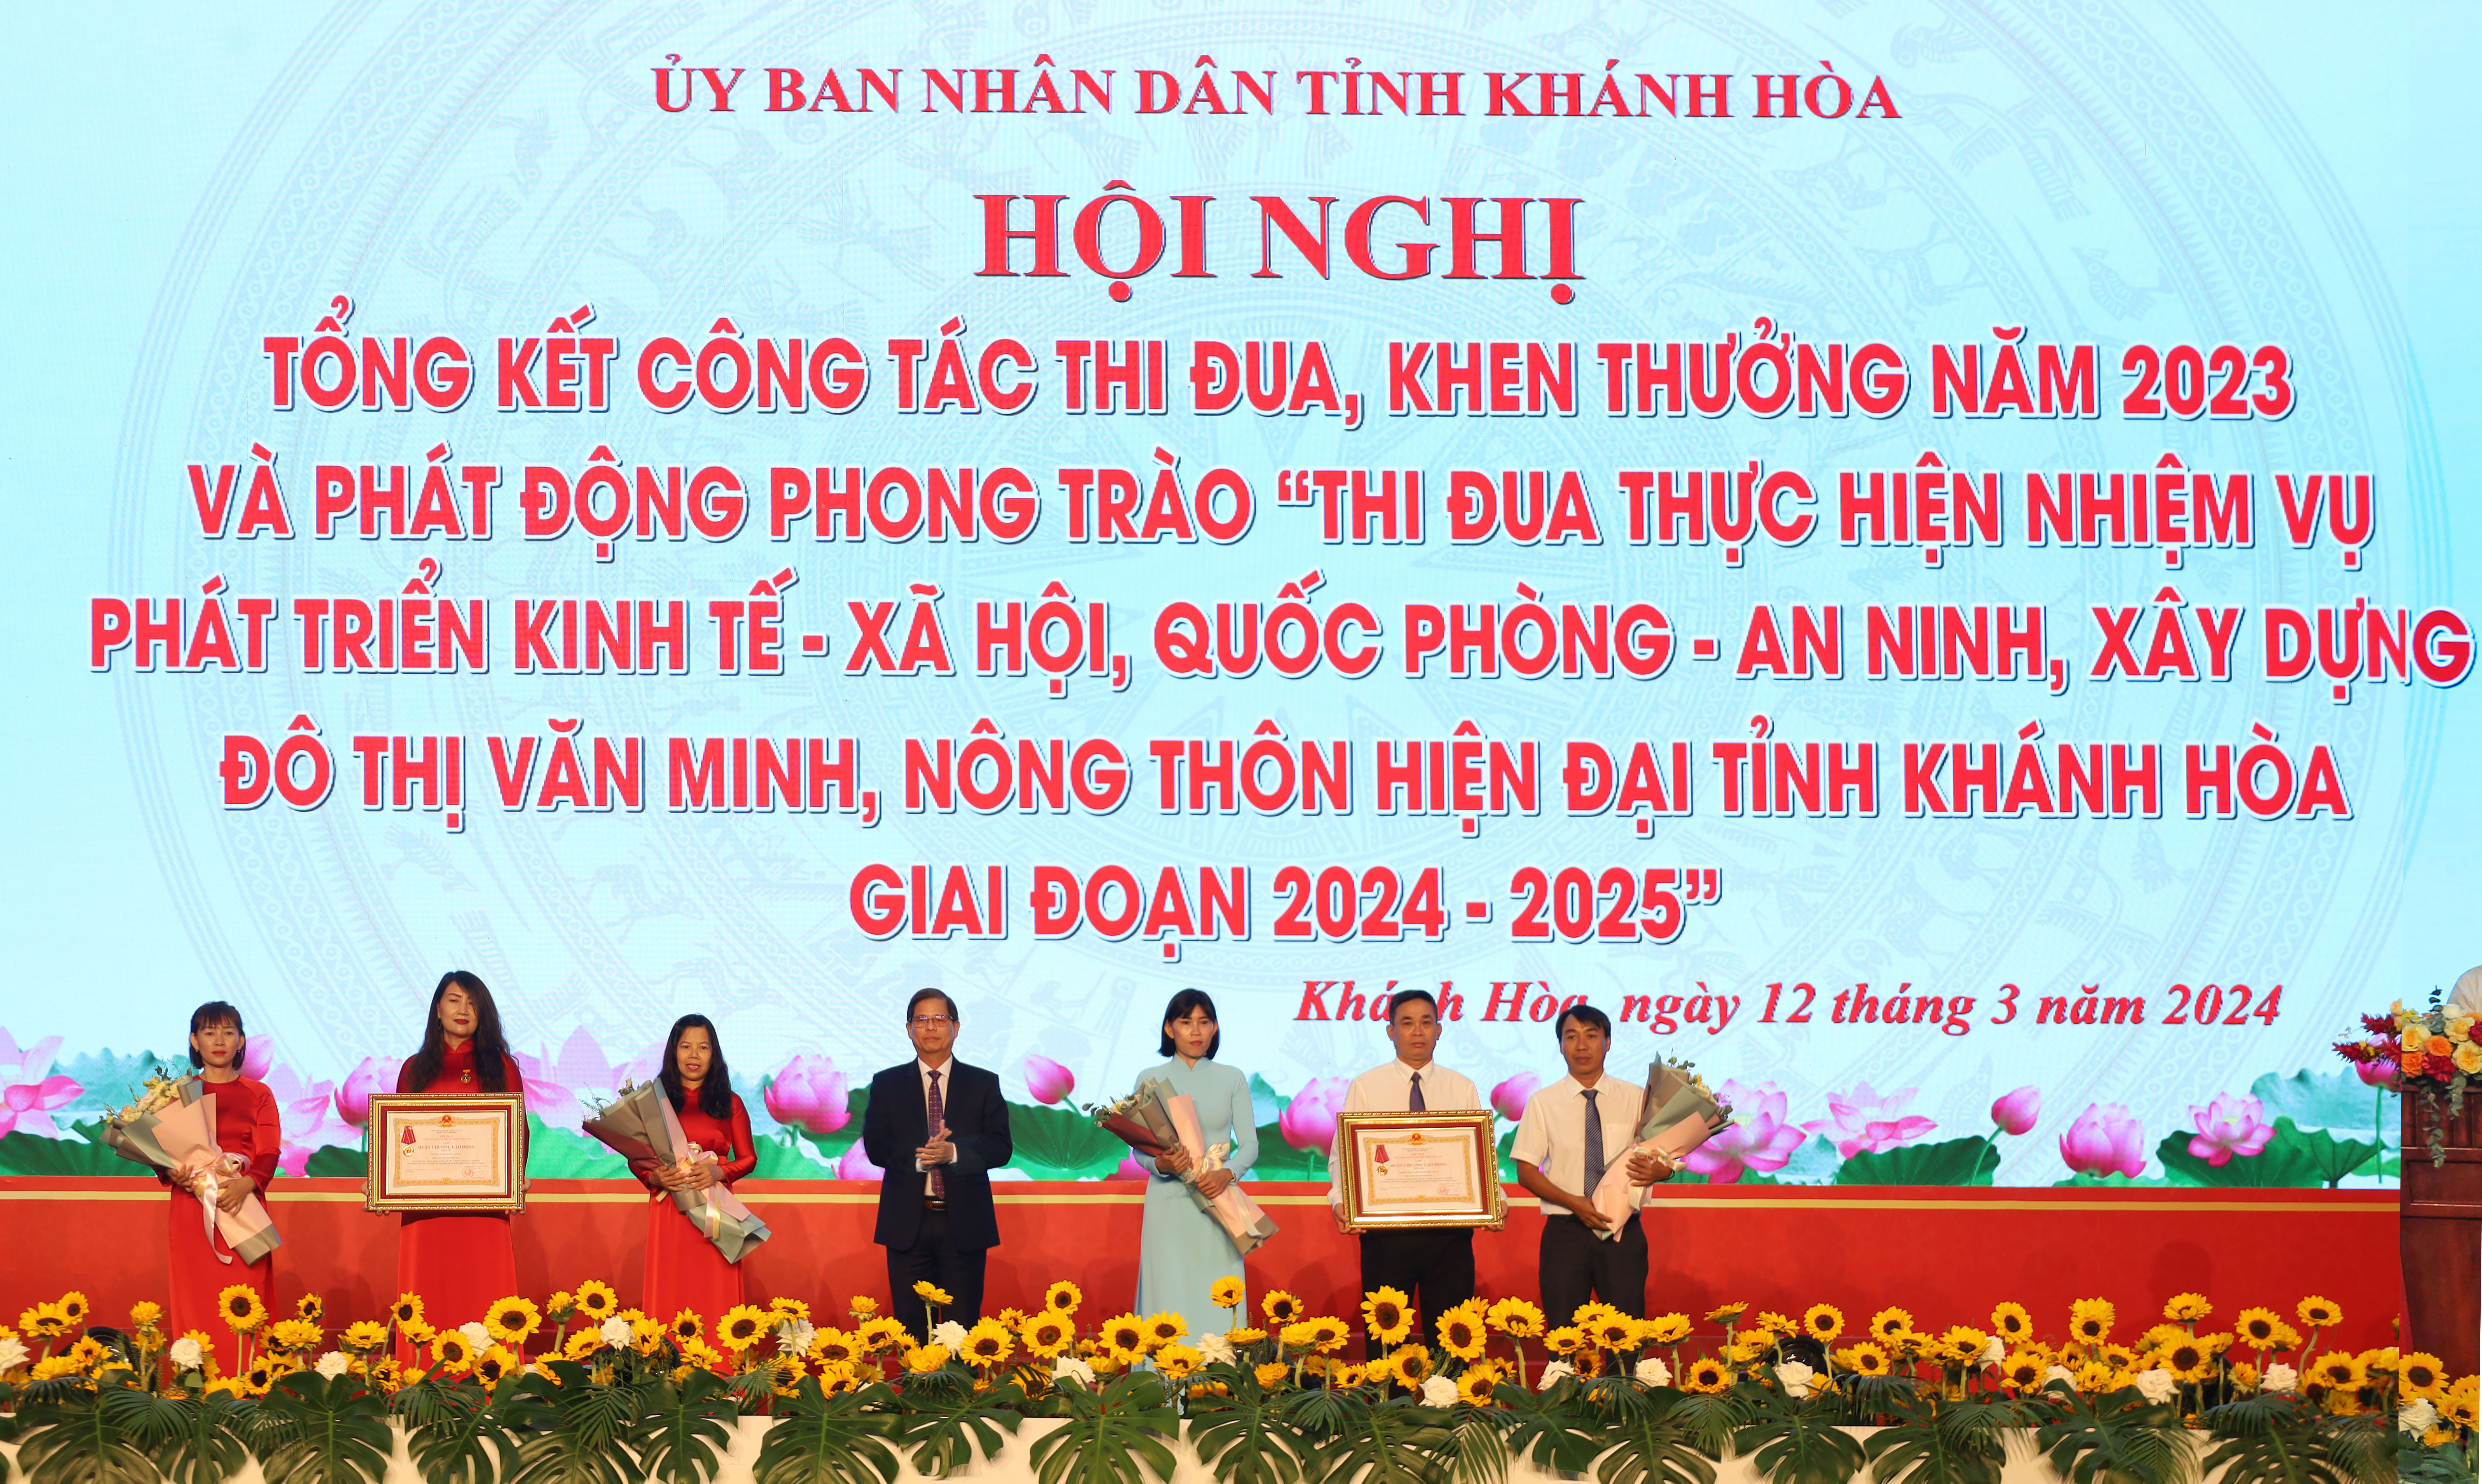 UBND tỉnh Khánh Hòa phát động phong trào thi đua giai đoạn 2024-2025